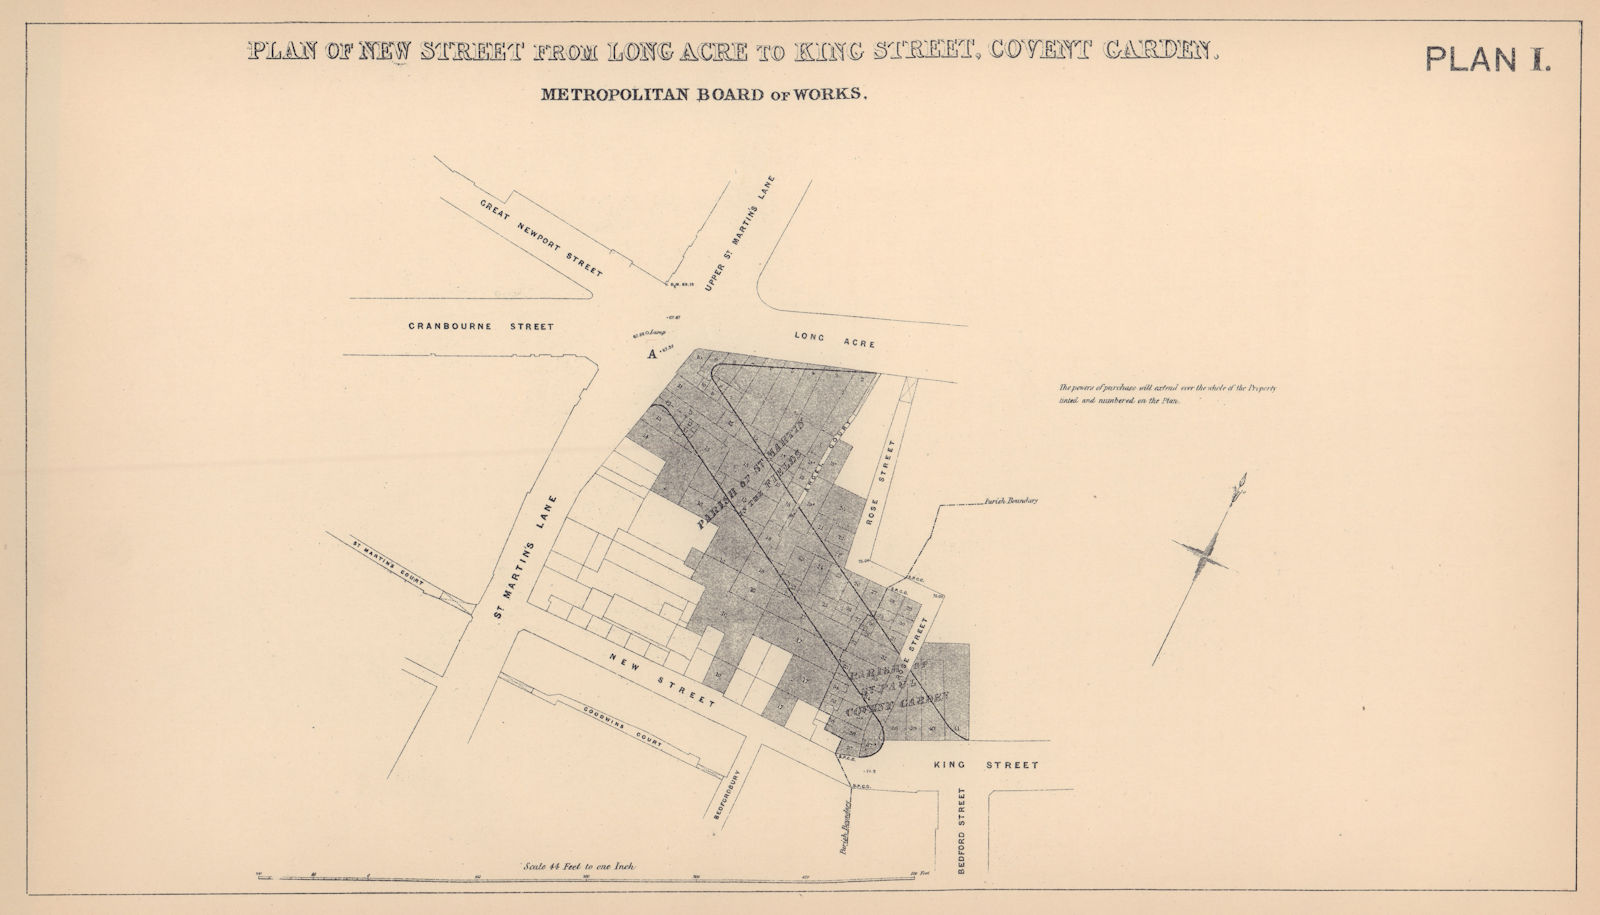 1861 Garrick Street development plan. Covent Garden St. Martin's Lane 1898 map